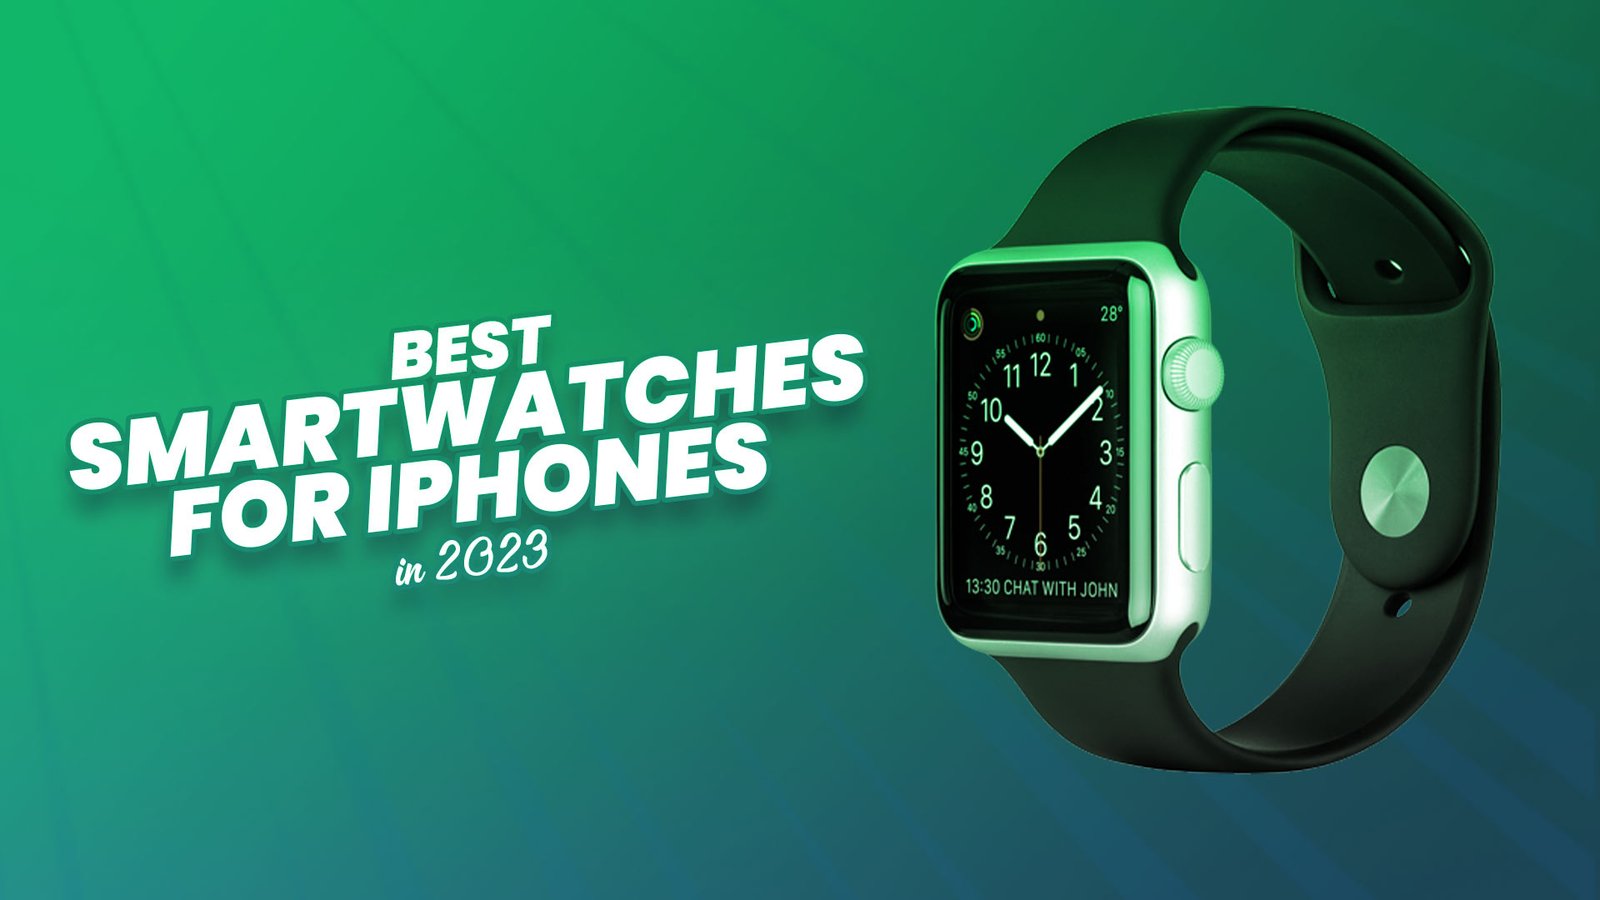 Best Smartwatches For iPhones in 2023